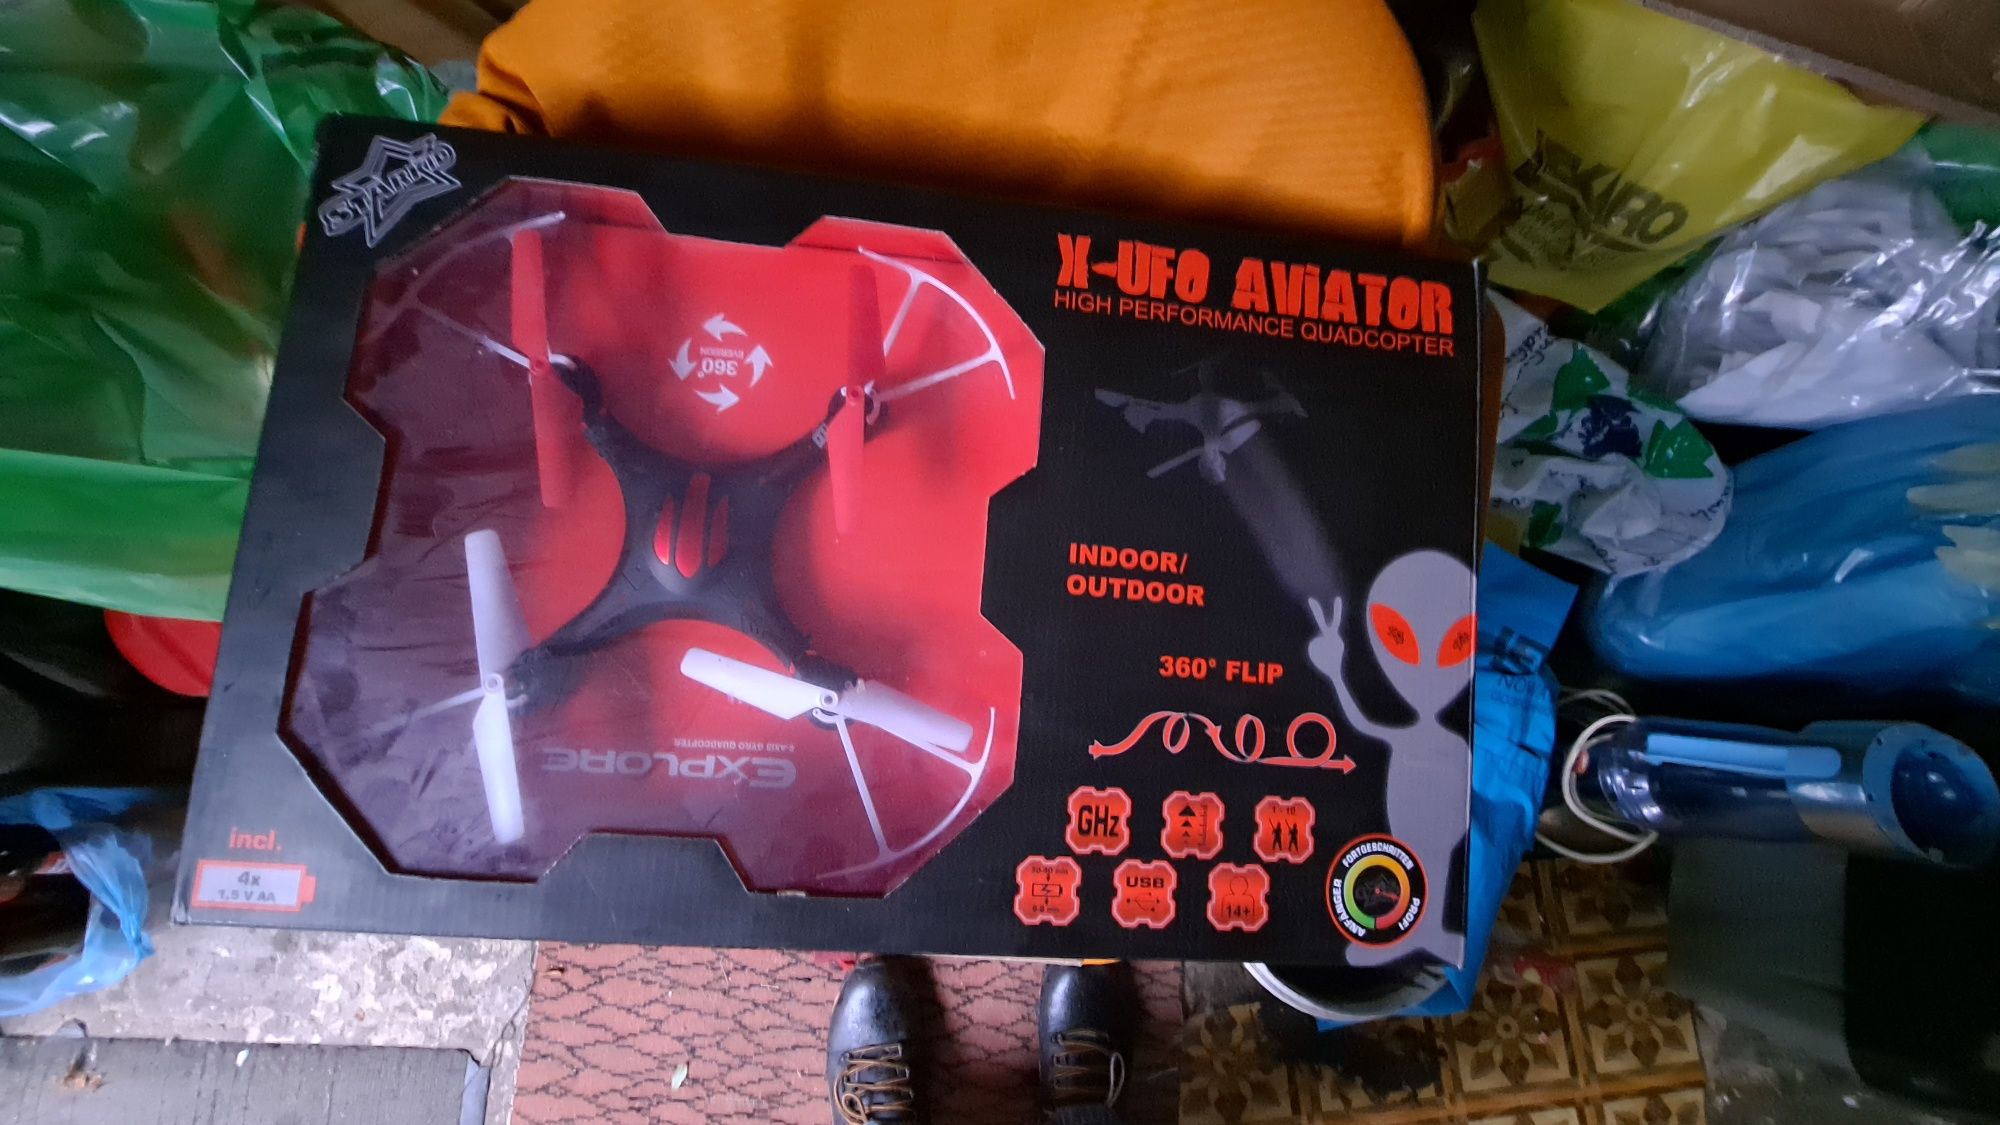 Dron Xufo Aviator